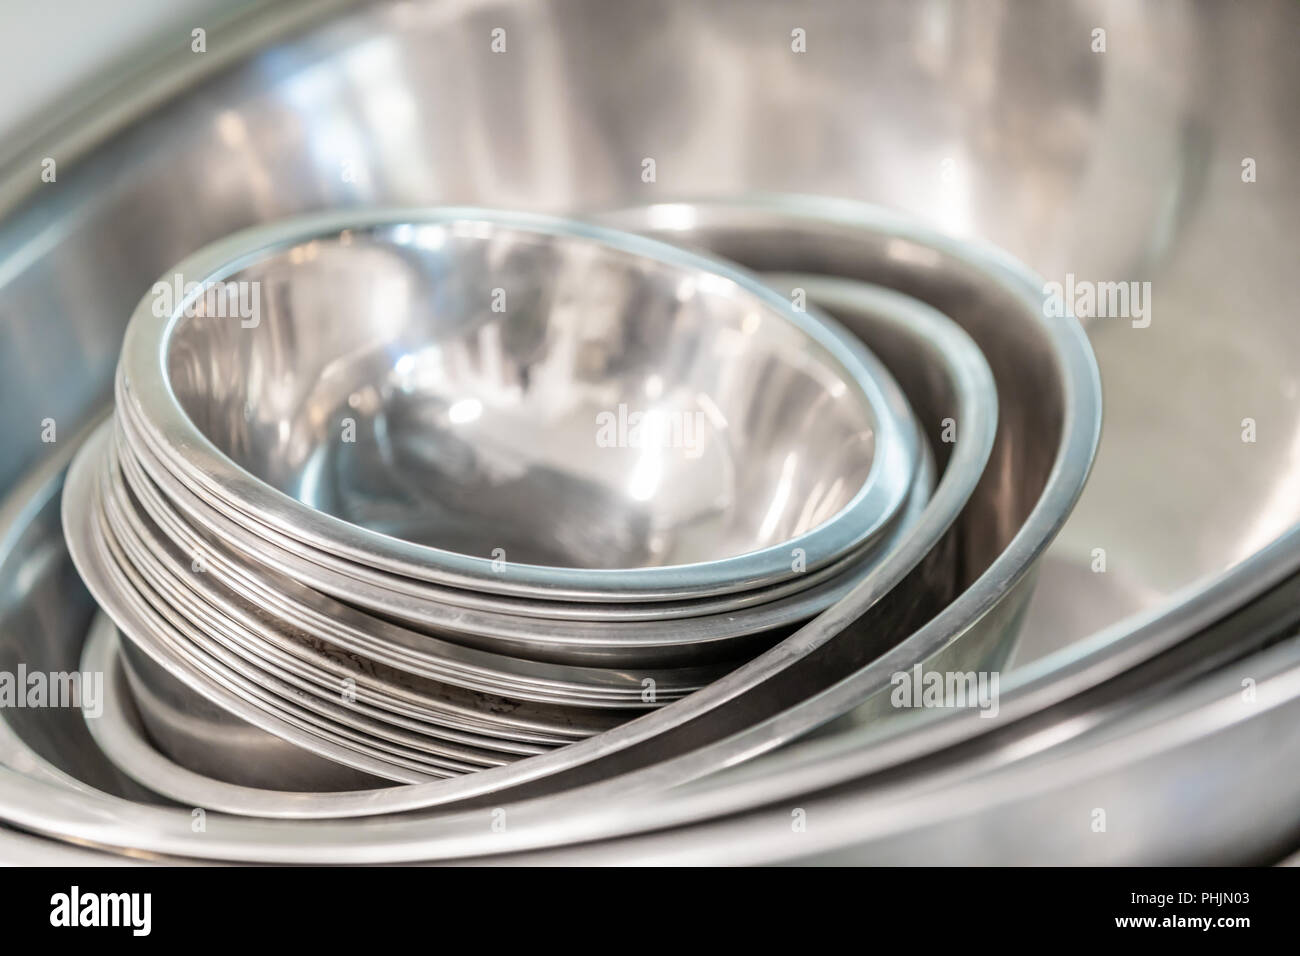 La imagen detallada de un conjunto de anidamiento cuencos de acero inoxidable en la cocina comercial Foto de stock